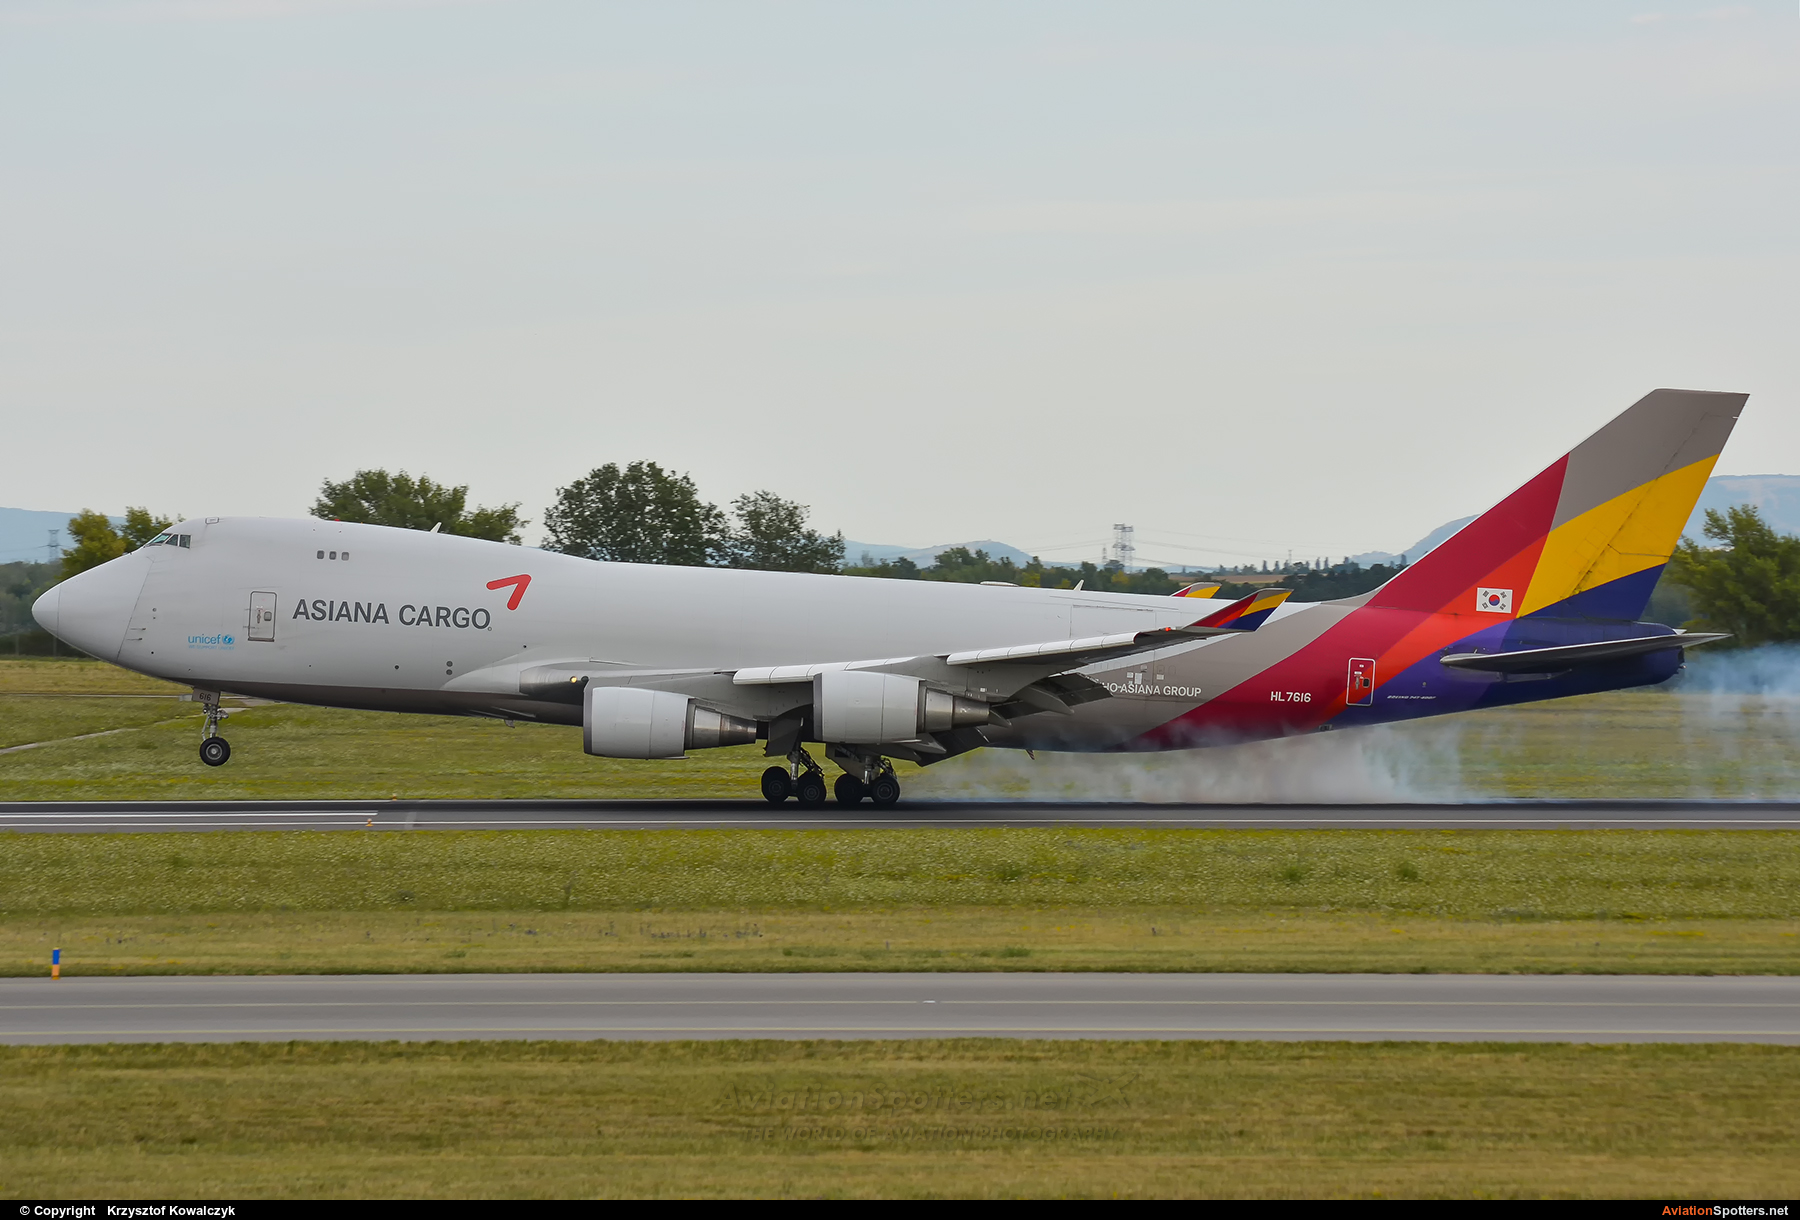 Asiana Cargo  -  747-400  (HL-7616) By Krzysztof Kowalczyk (Krzysztof Kowalczyk)